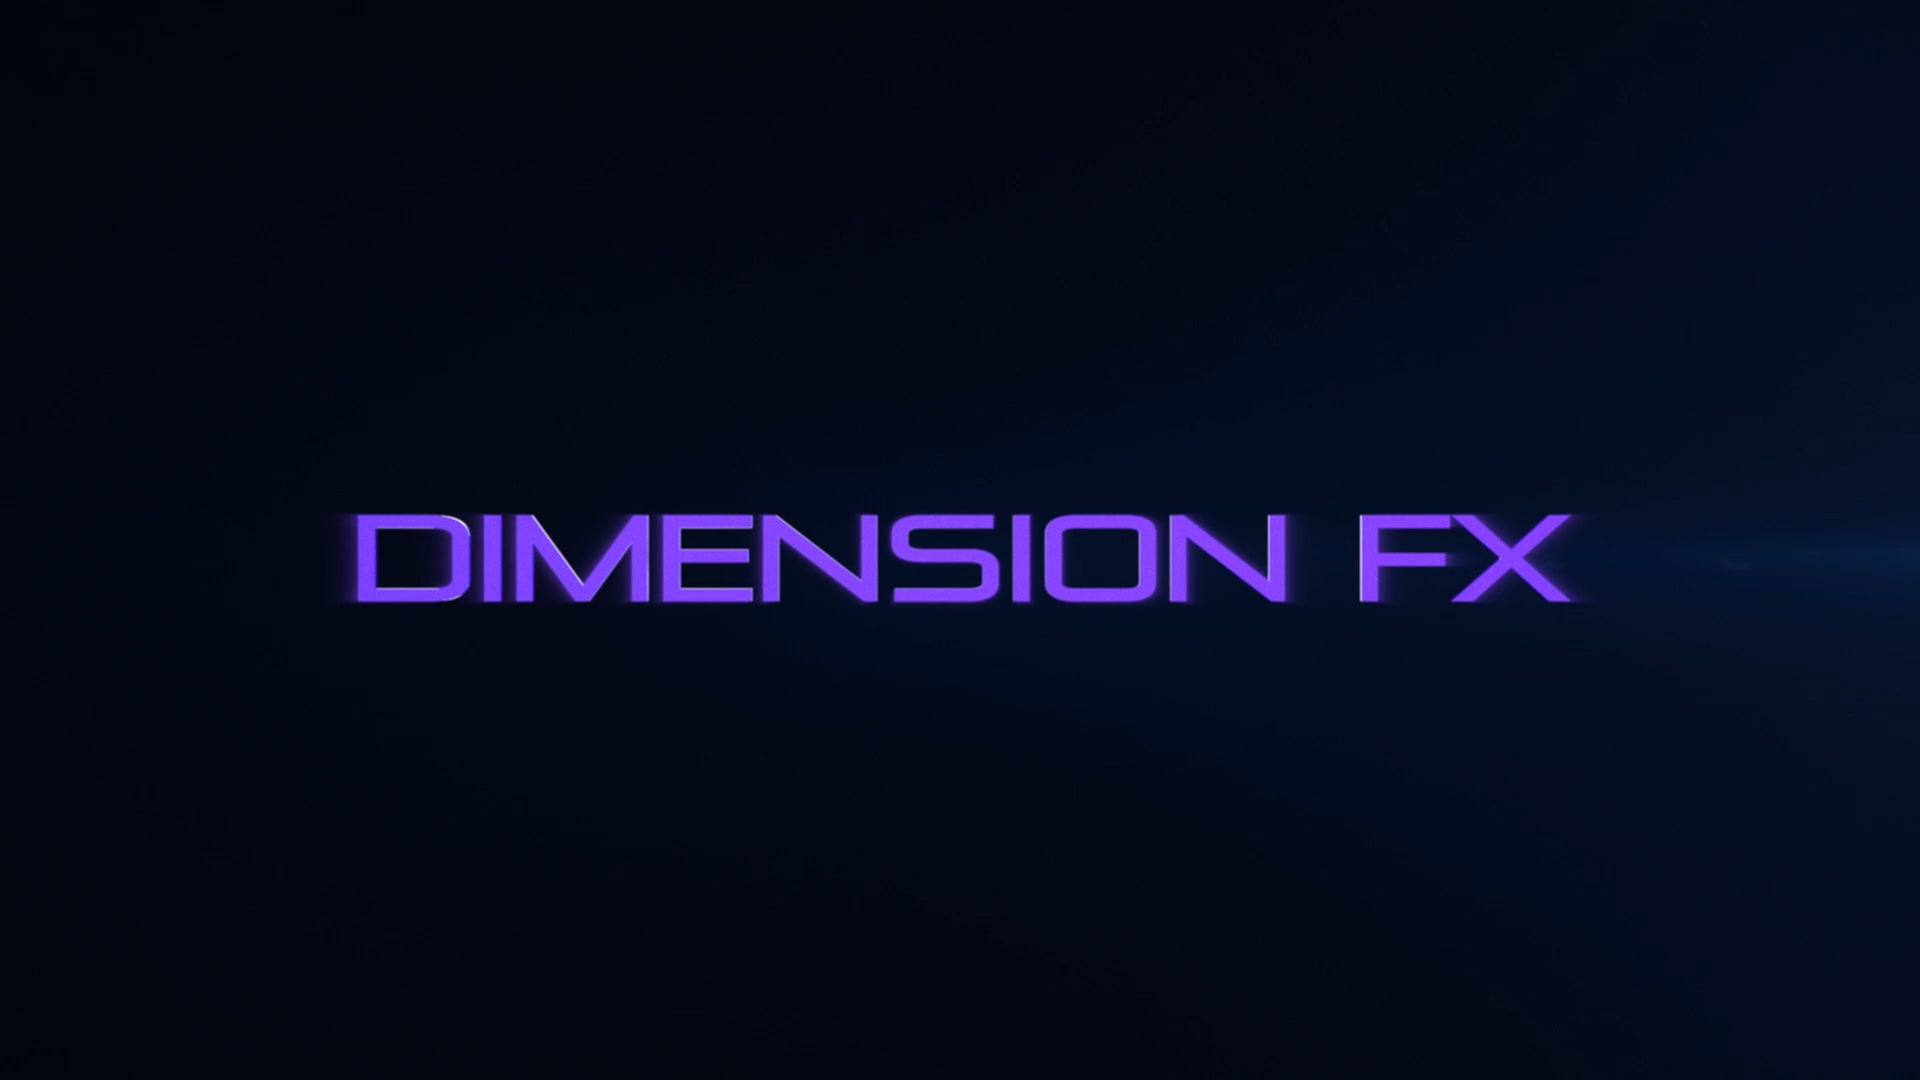 Dimension FX open